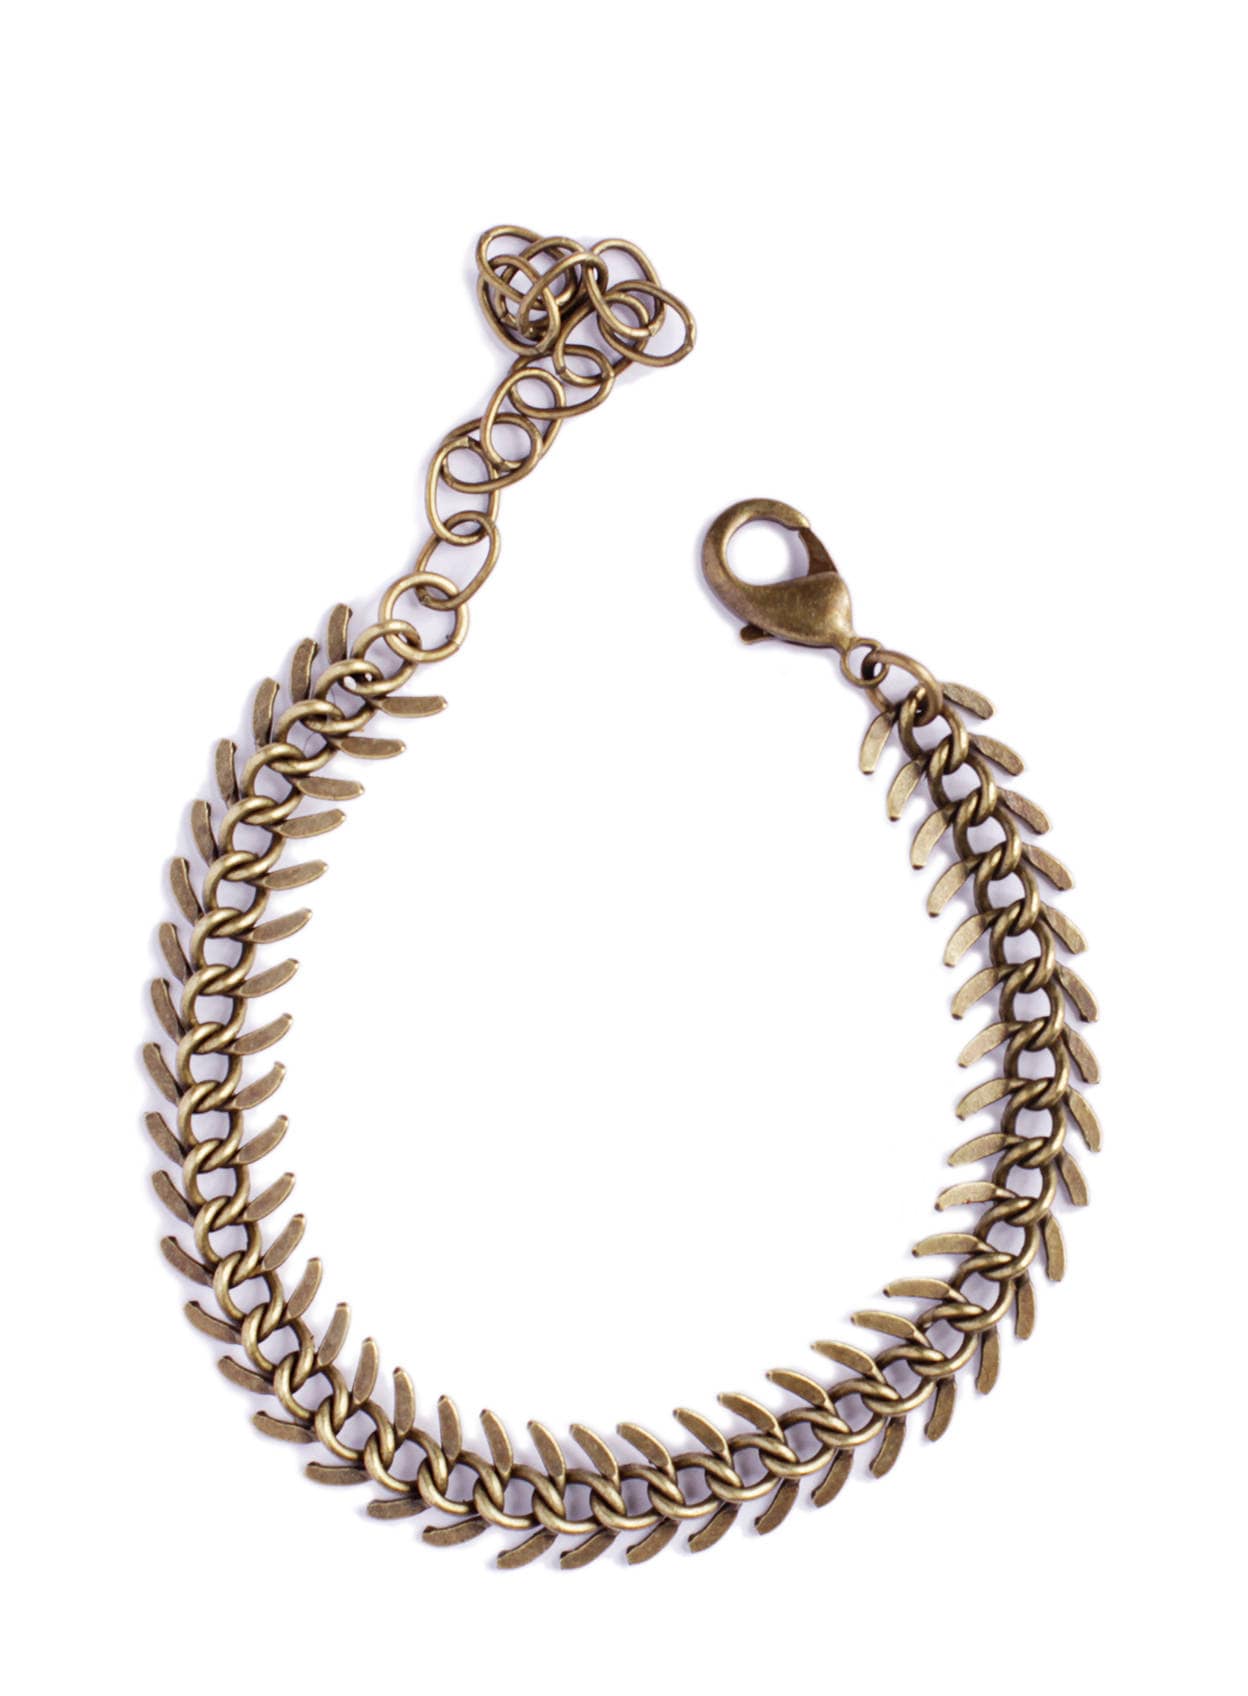 Sieraden Armbanden Schakelarmbanden Spine chain bracelet Spine shaped brass bracelet for men and women Men's Bracelet Adjustable Brass bracelet for Men Mens Jewelry 